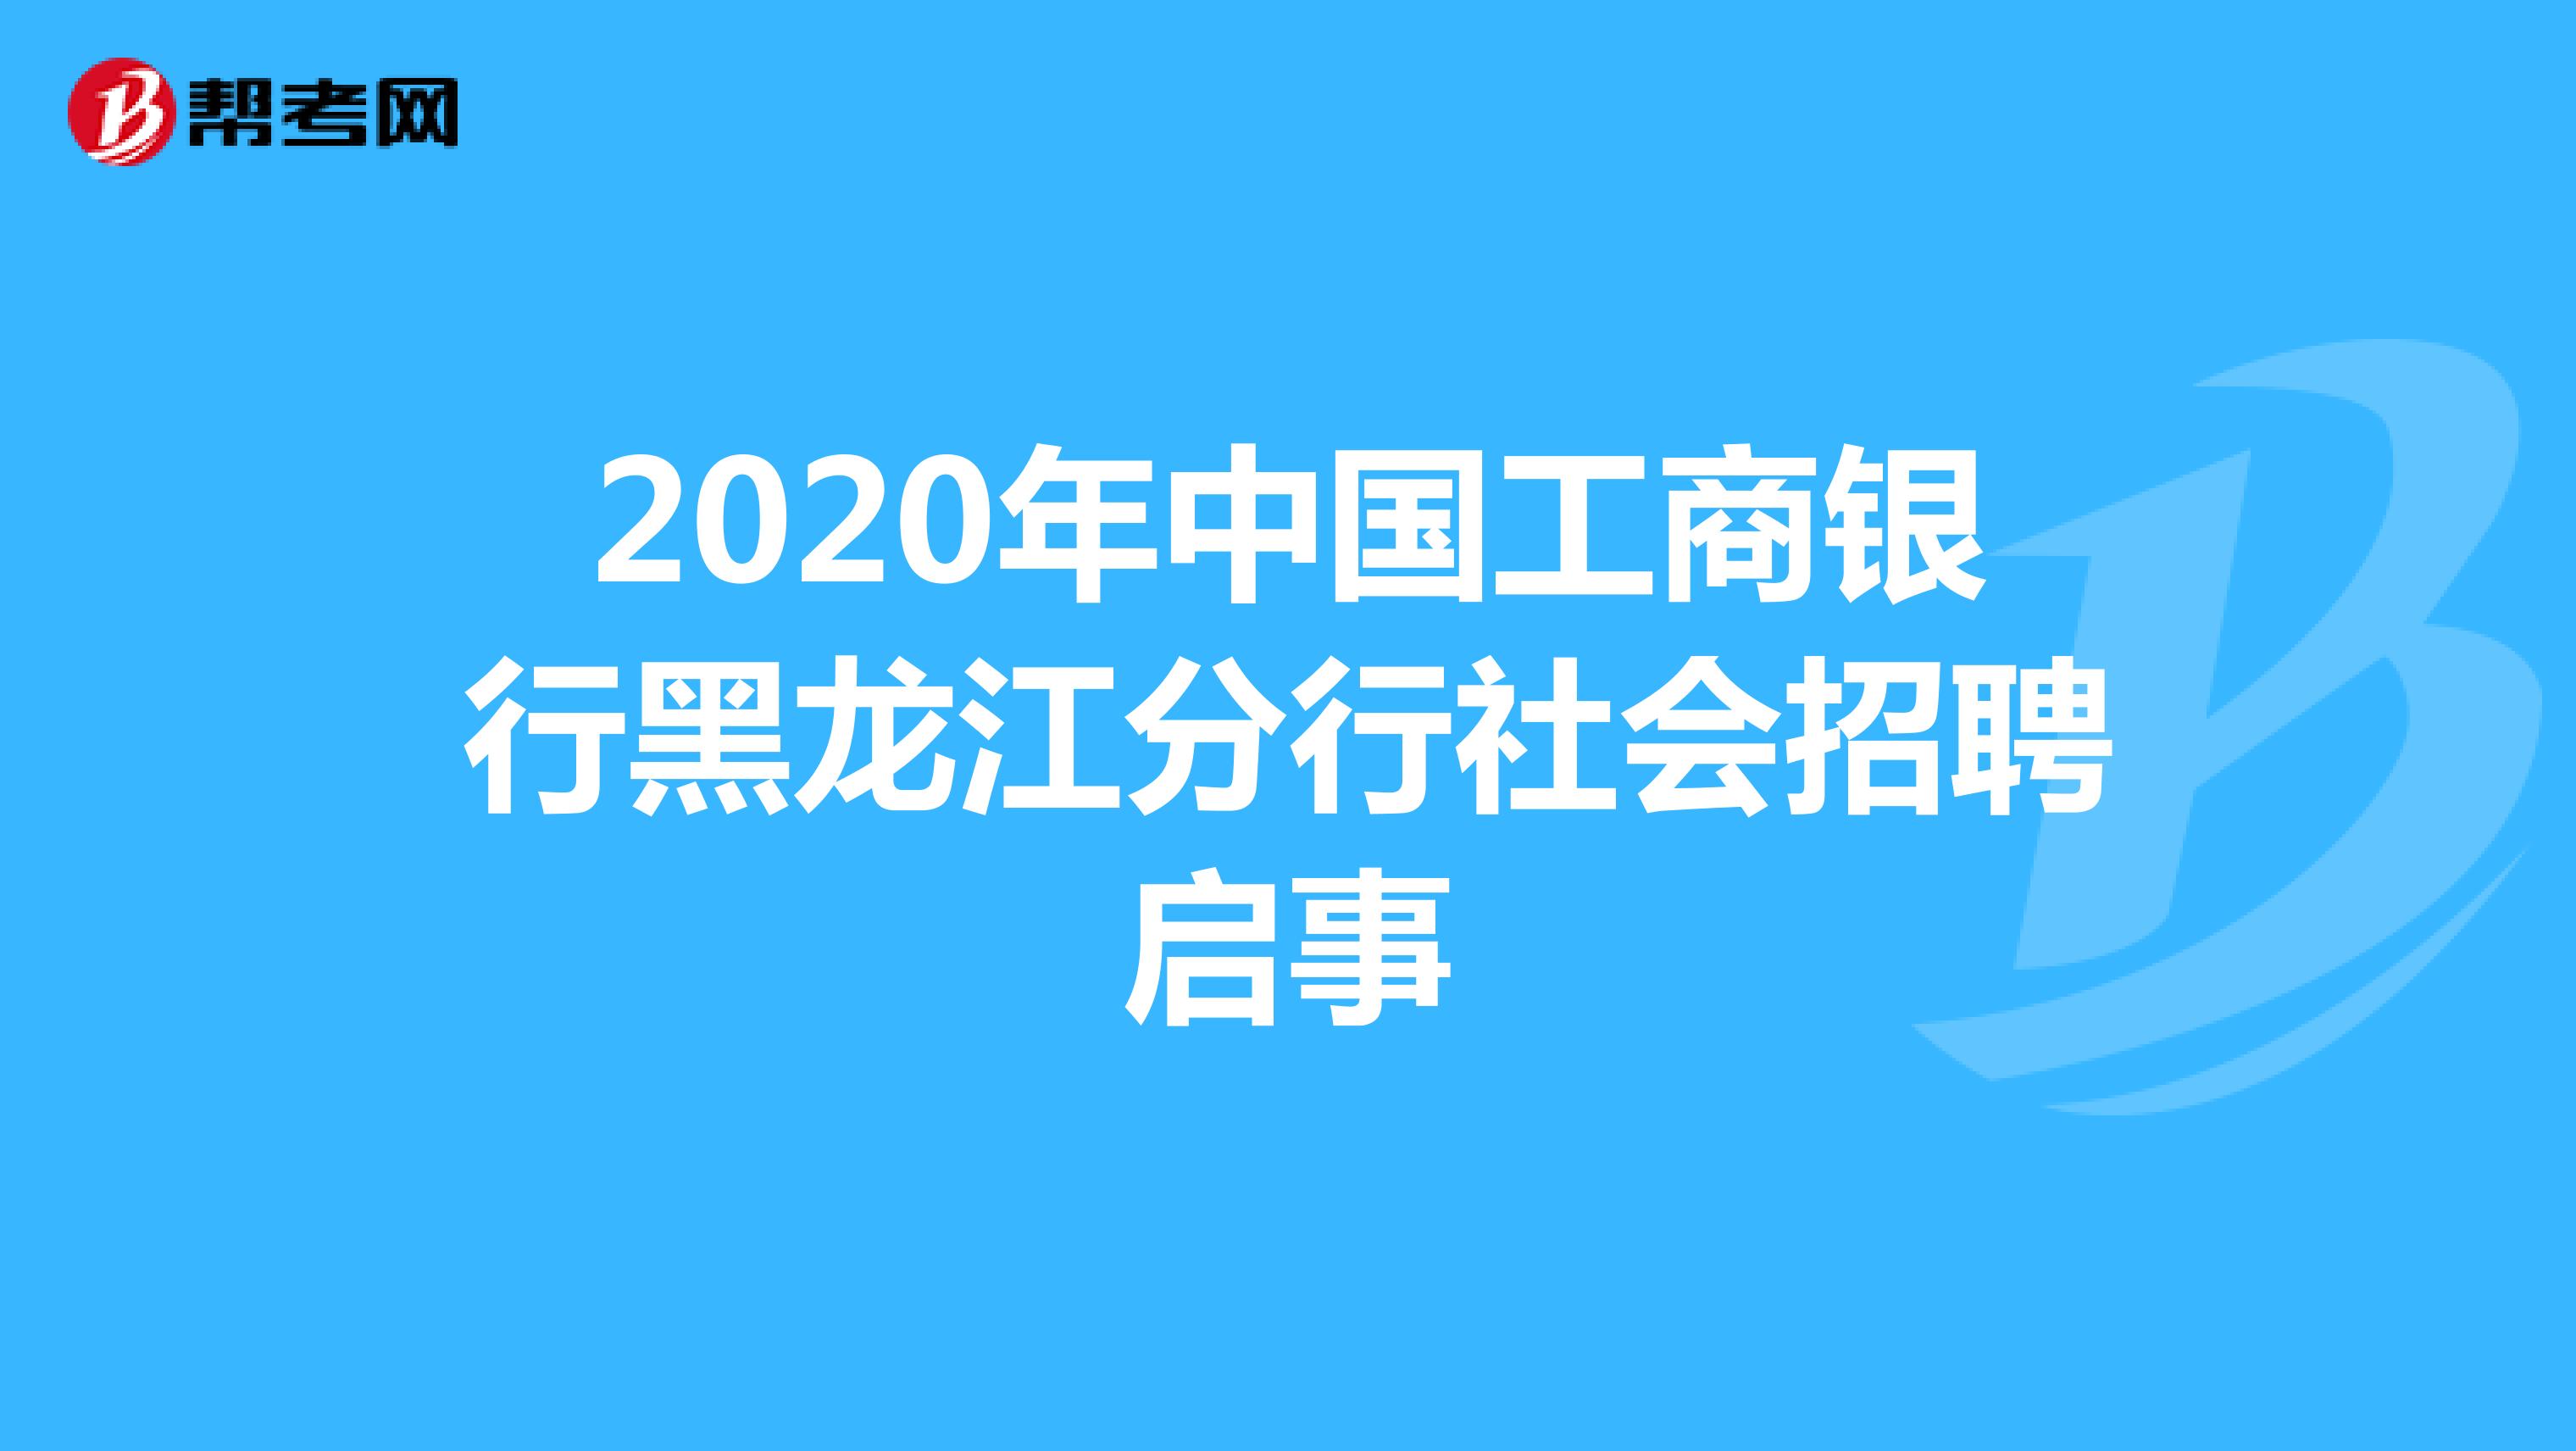 2020年中国工商银行黑龙江分行社会招聘启事